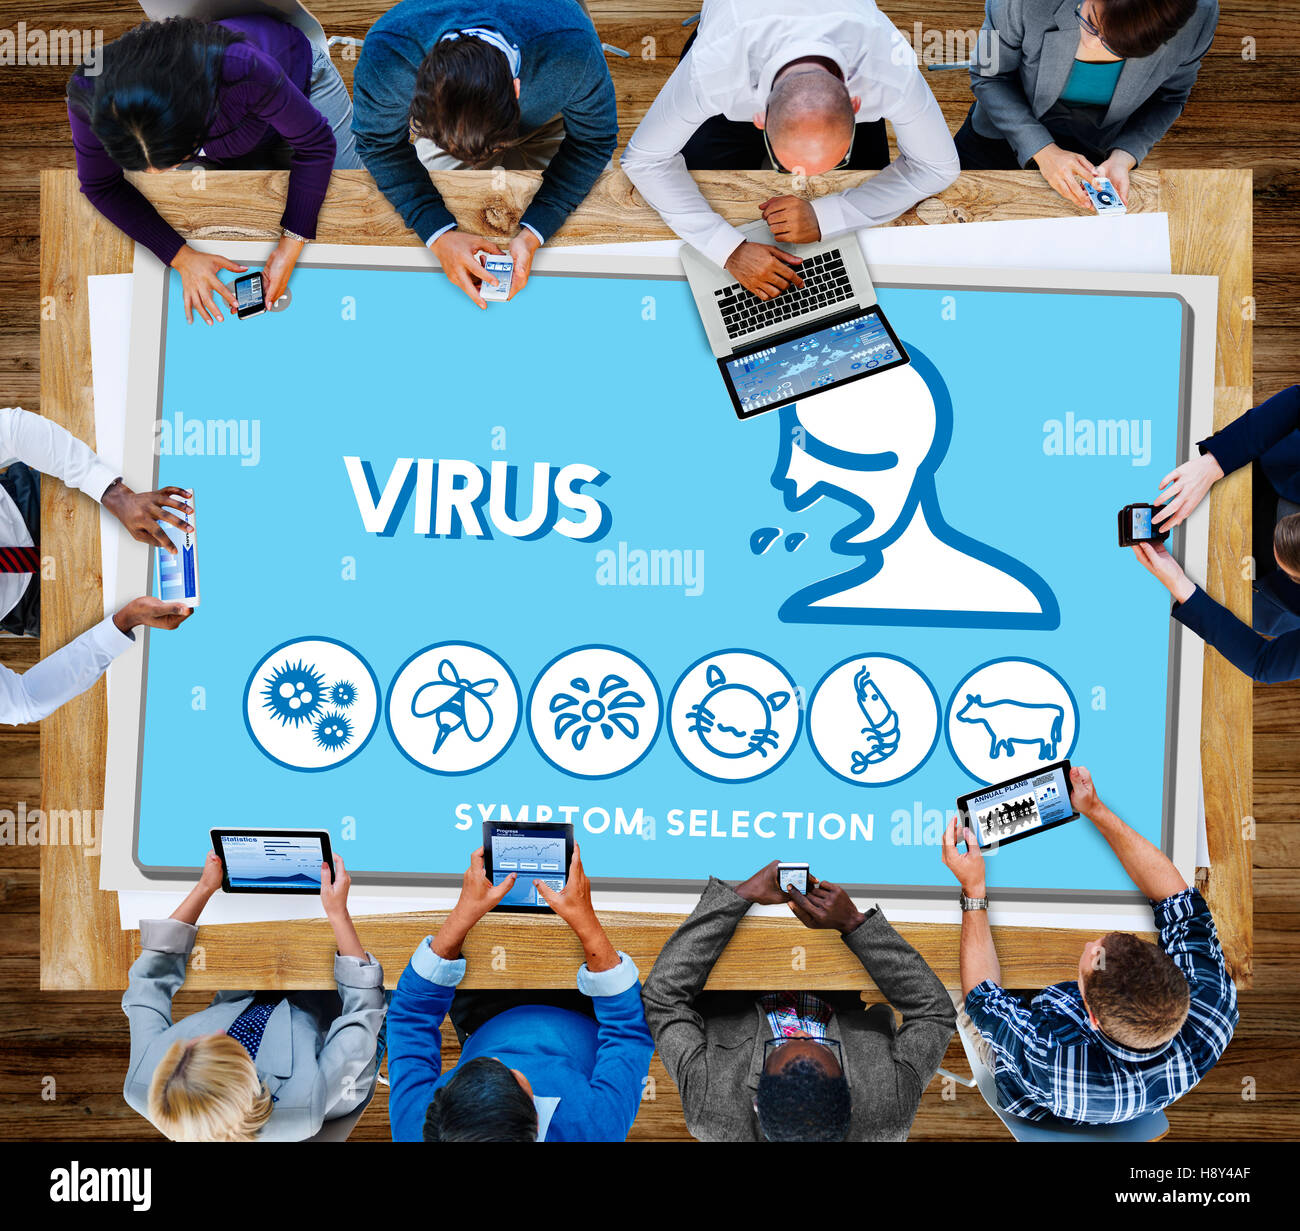 Virus-Allergie Störung Krankheit medizinisches Konzept Stockfoto